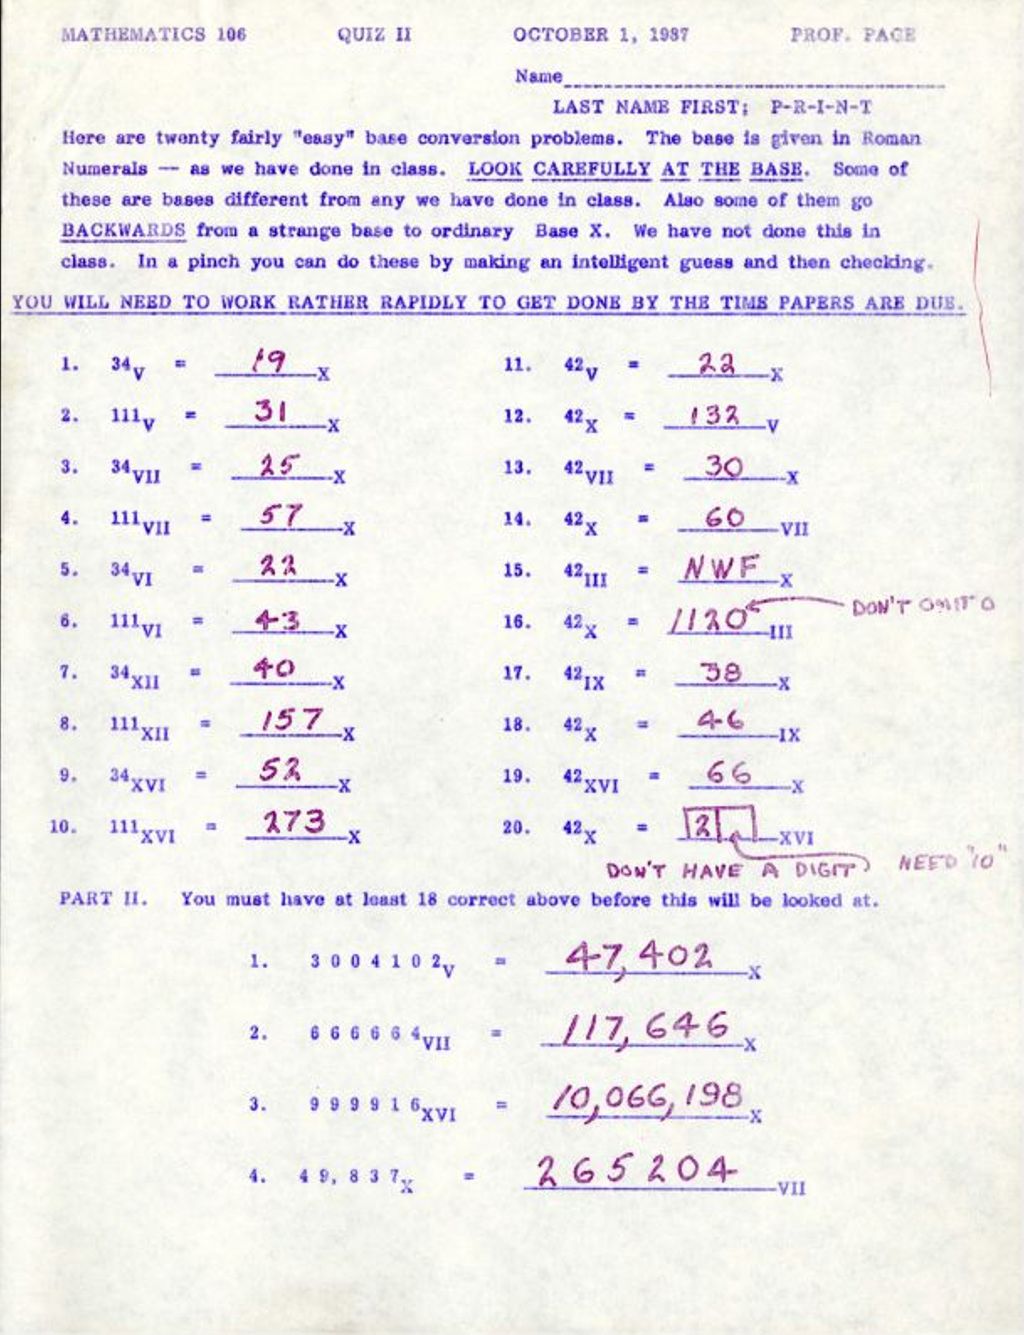 Math 106 Quiz II (1987) Twenty fairly "easy” base conversions AK